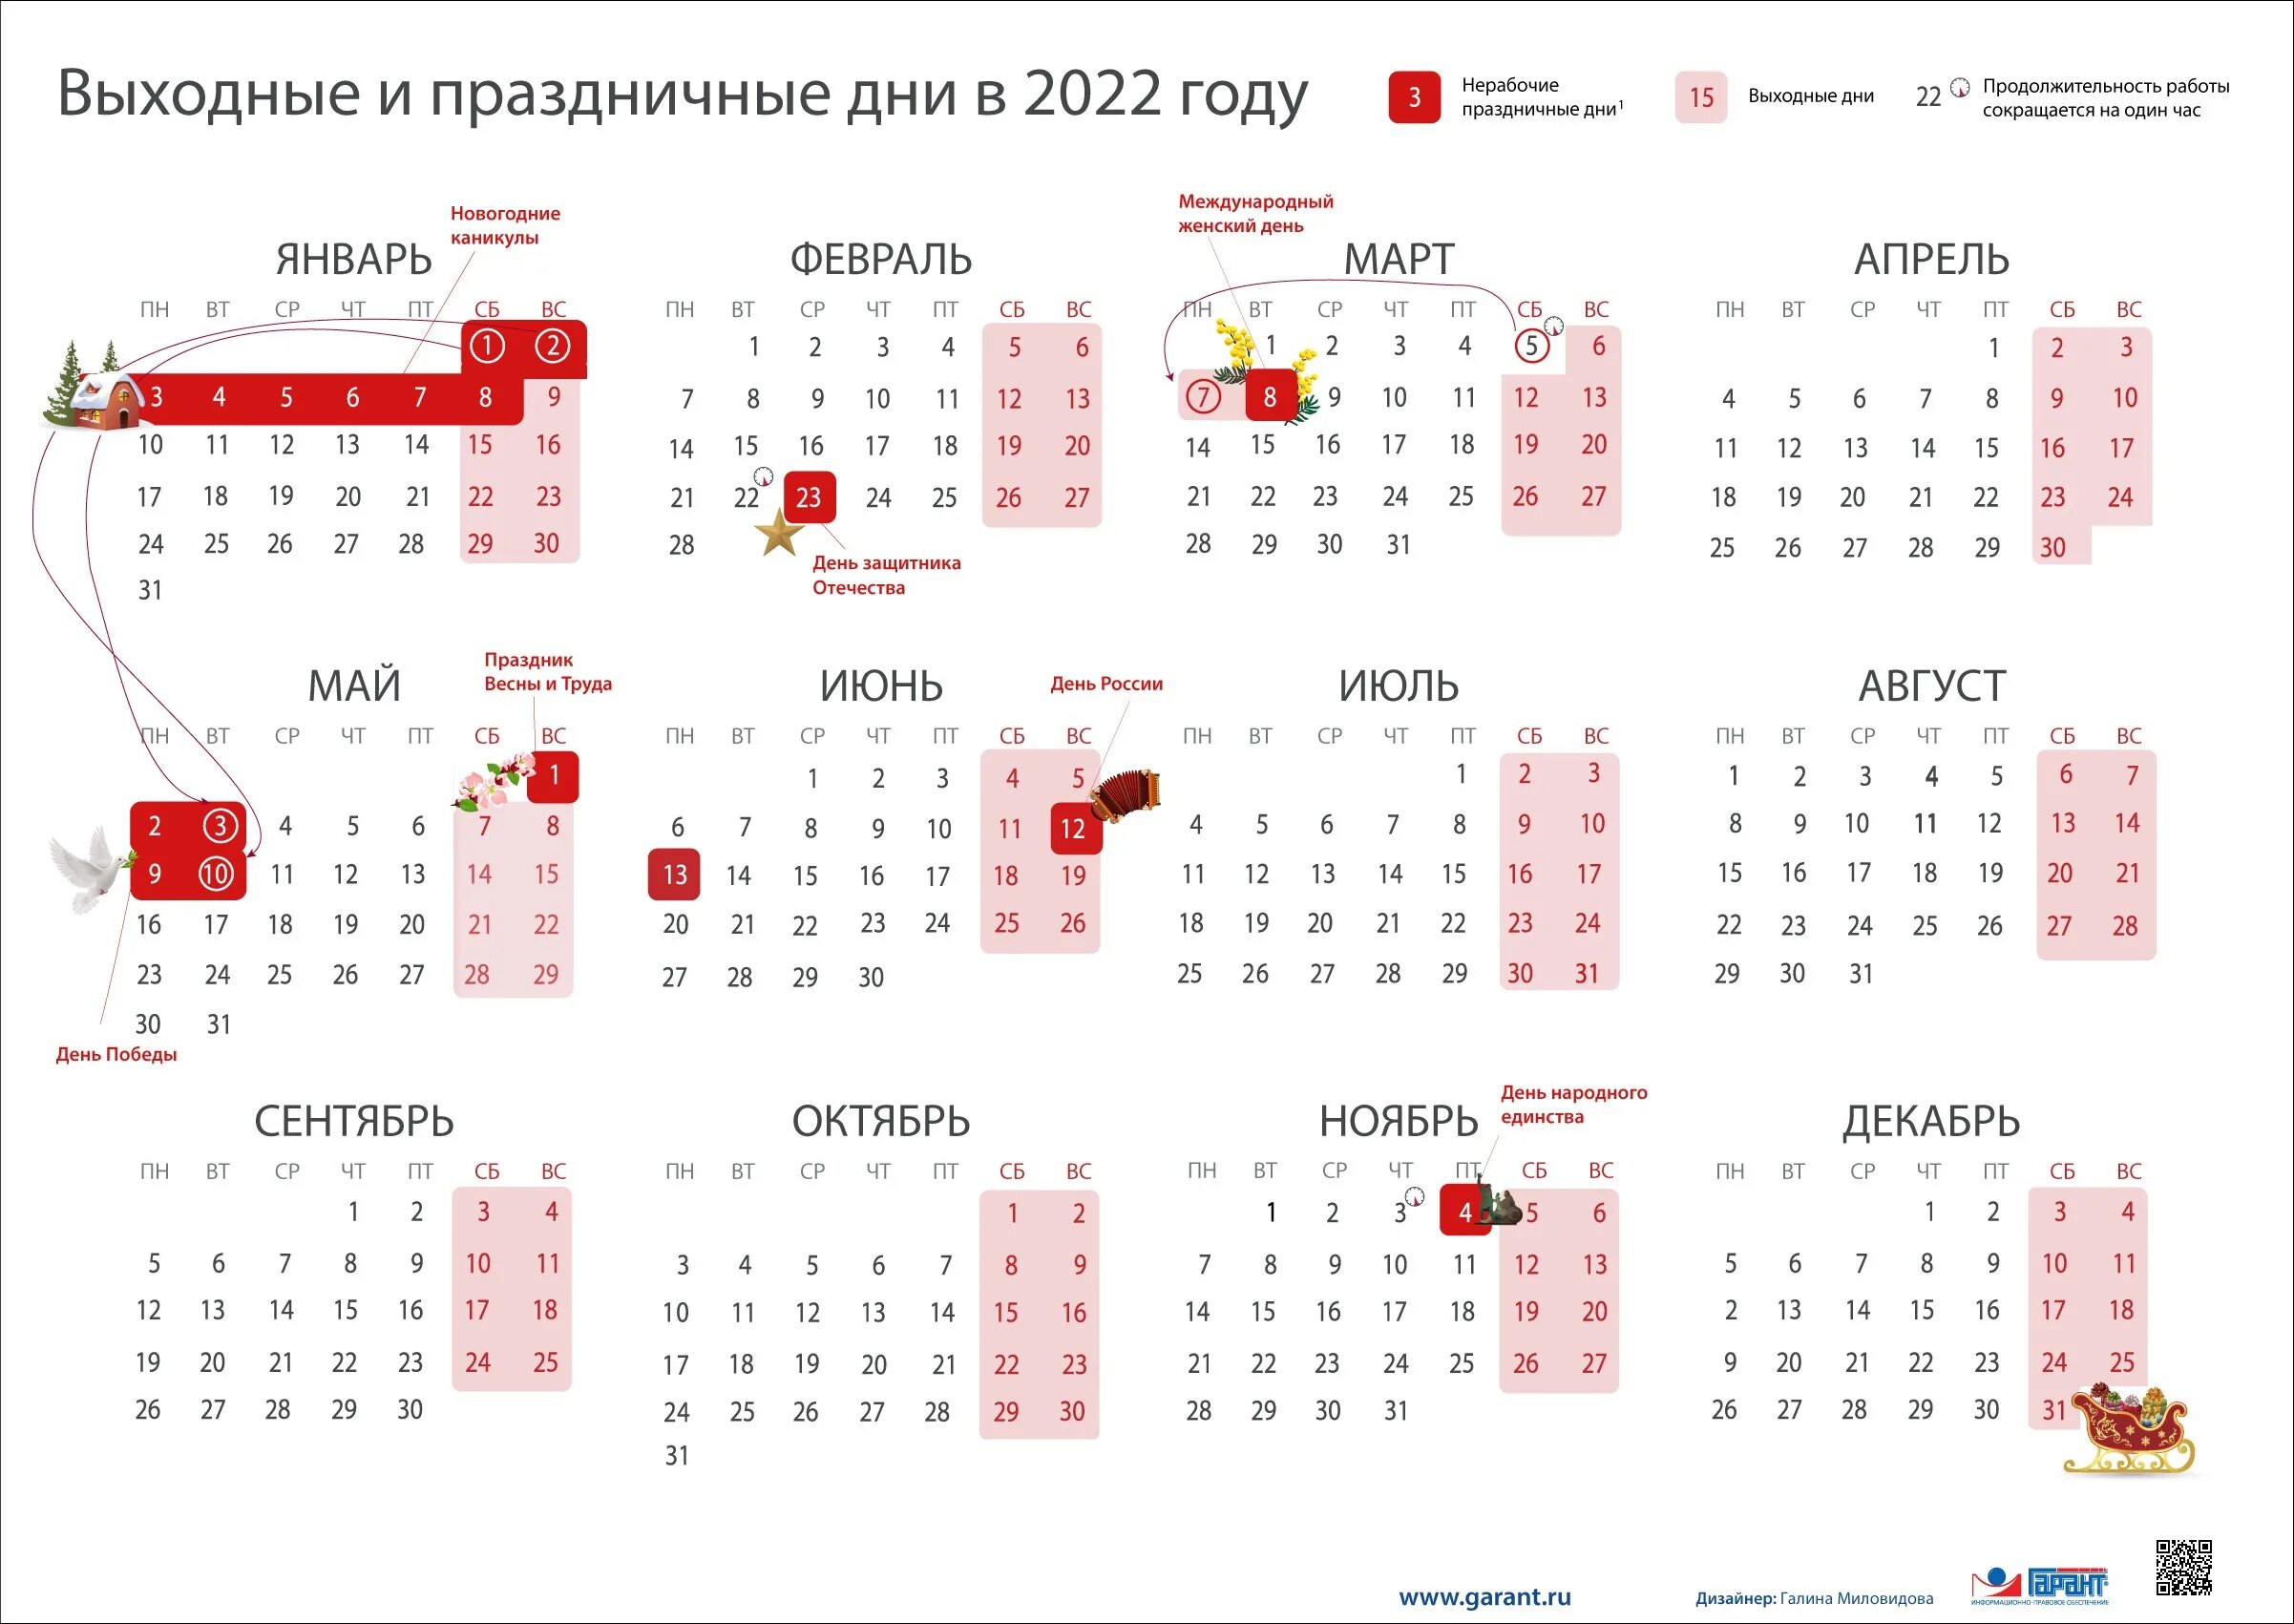 Май 2018 года цены. Календарь выходных и праздничных дней на 2022 год в России. Перенос праздников 2022 год утвержденный правительством РФ. Выходные и праздники в 2022 года в России нерабочие дни календарь. Выходные и праздничные дни в феврале 2022 года в России.